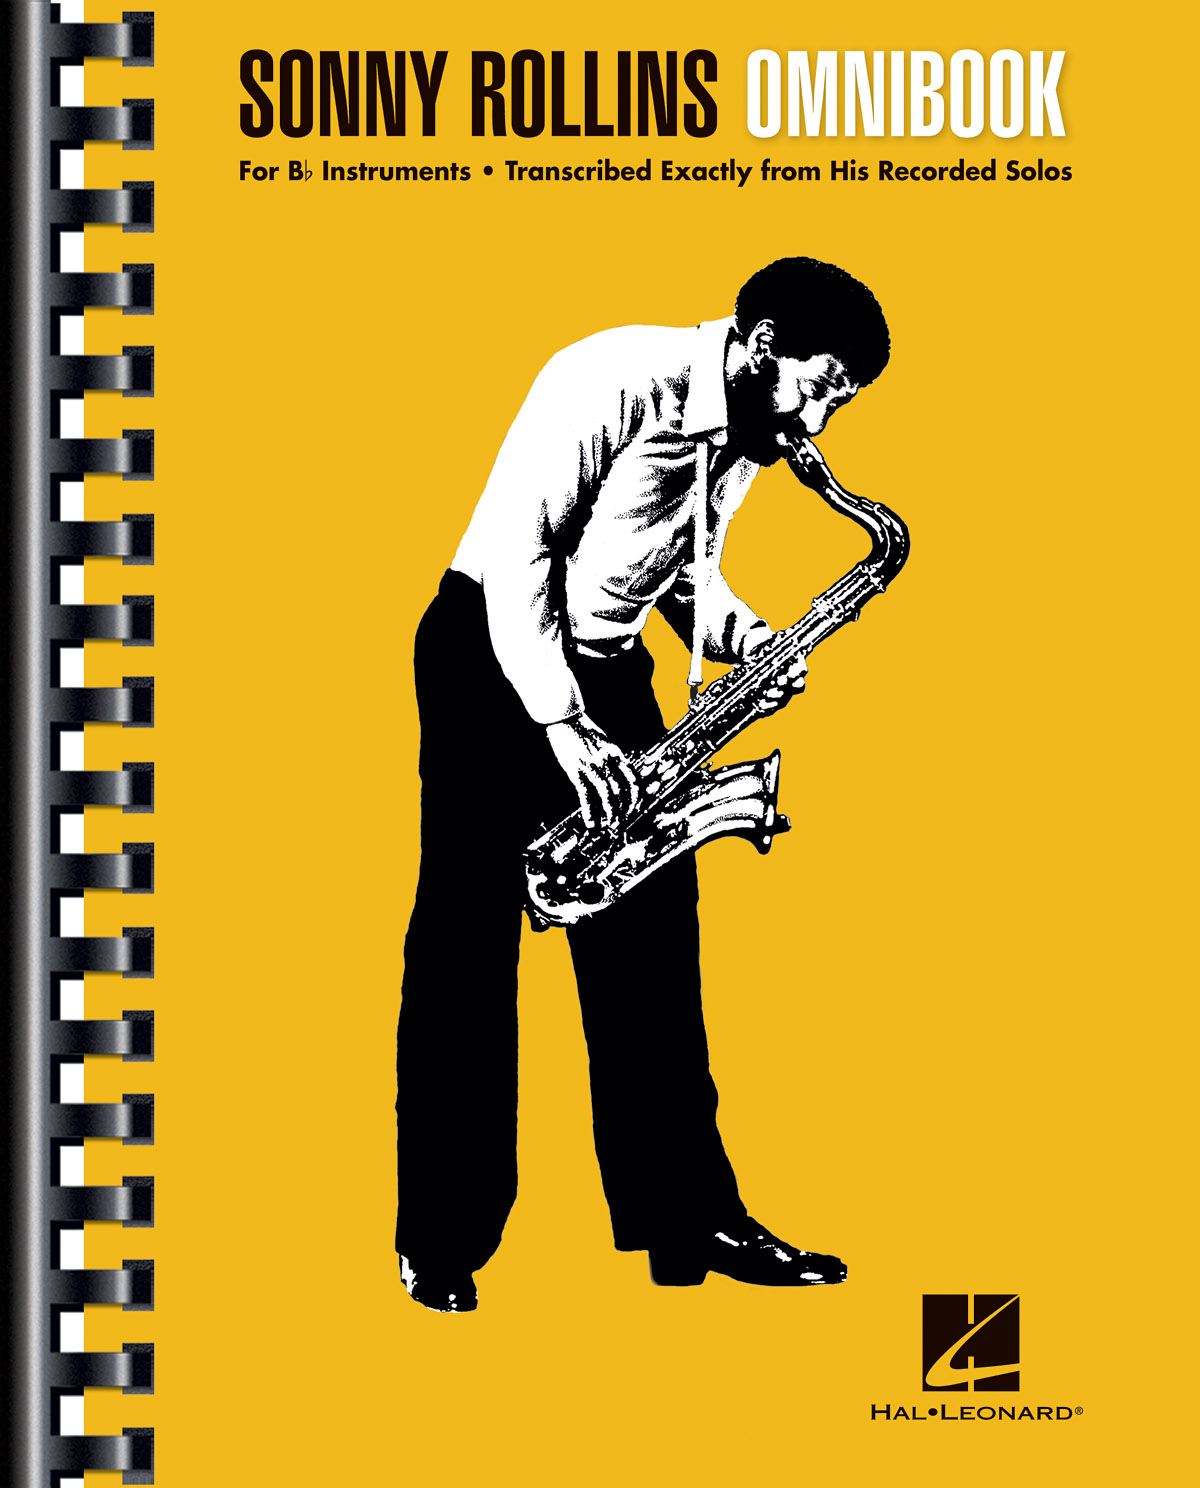 Sonny Rollins Omnibook for B-Flat Instruments - noty s akordy v ladění Bb